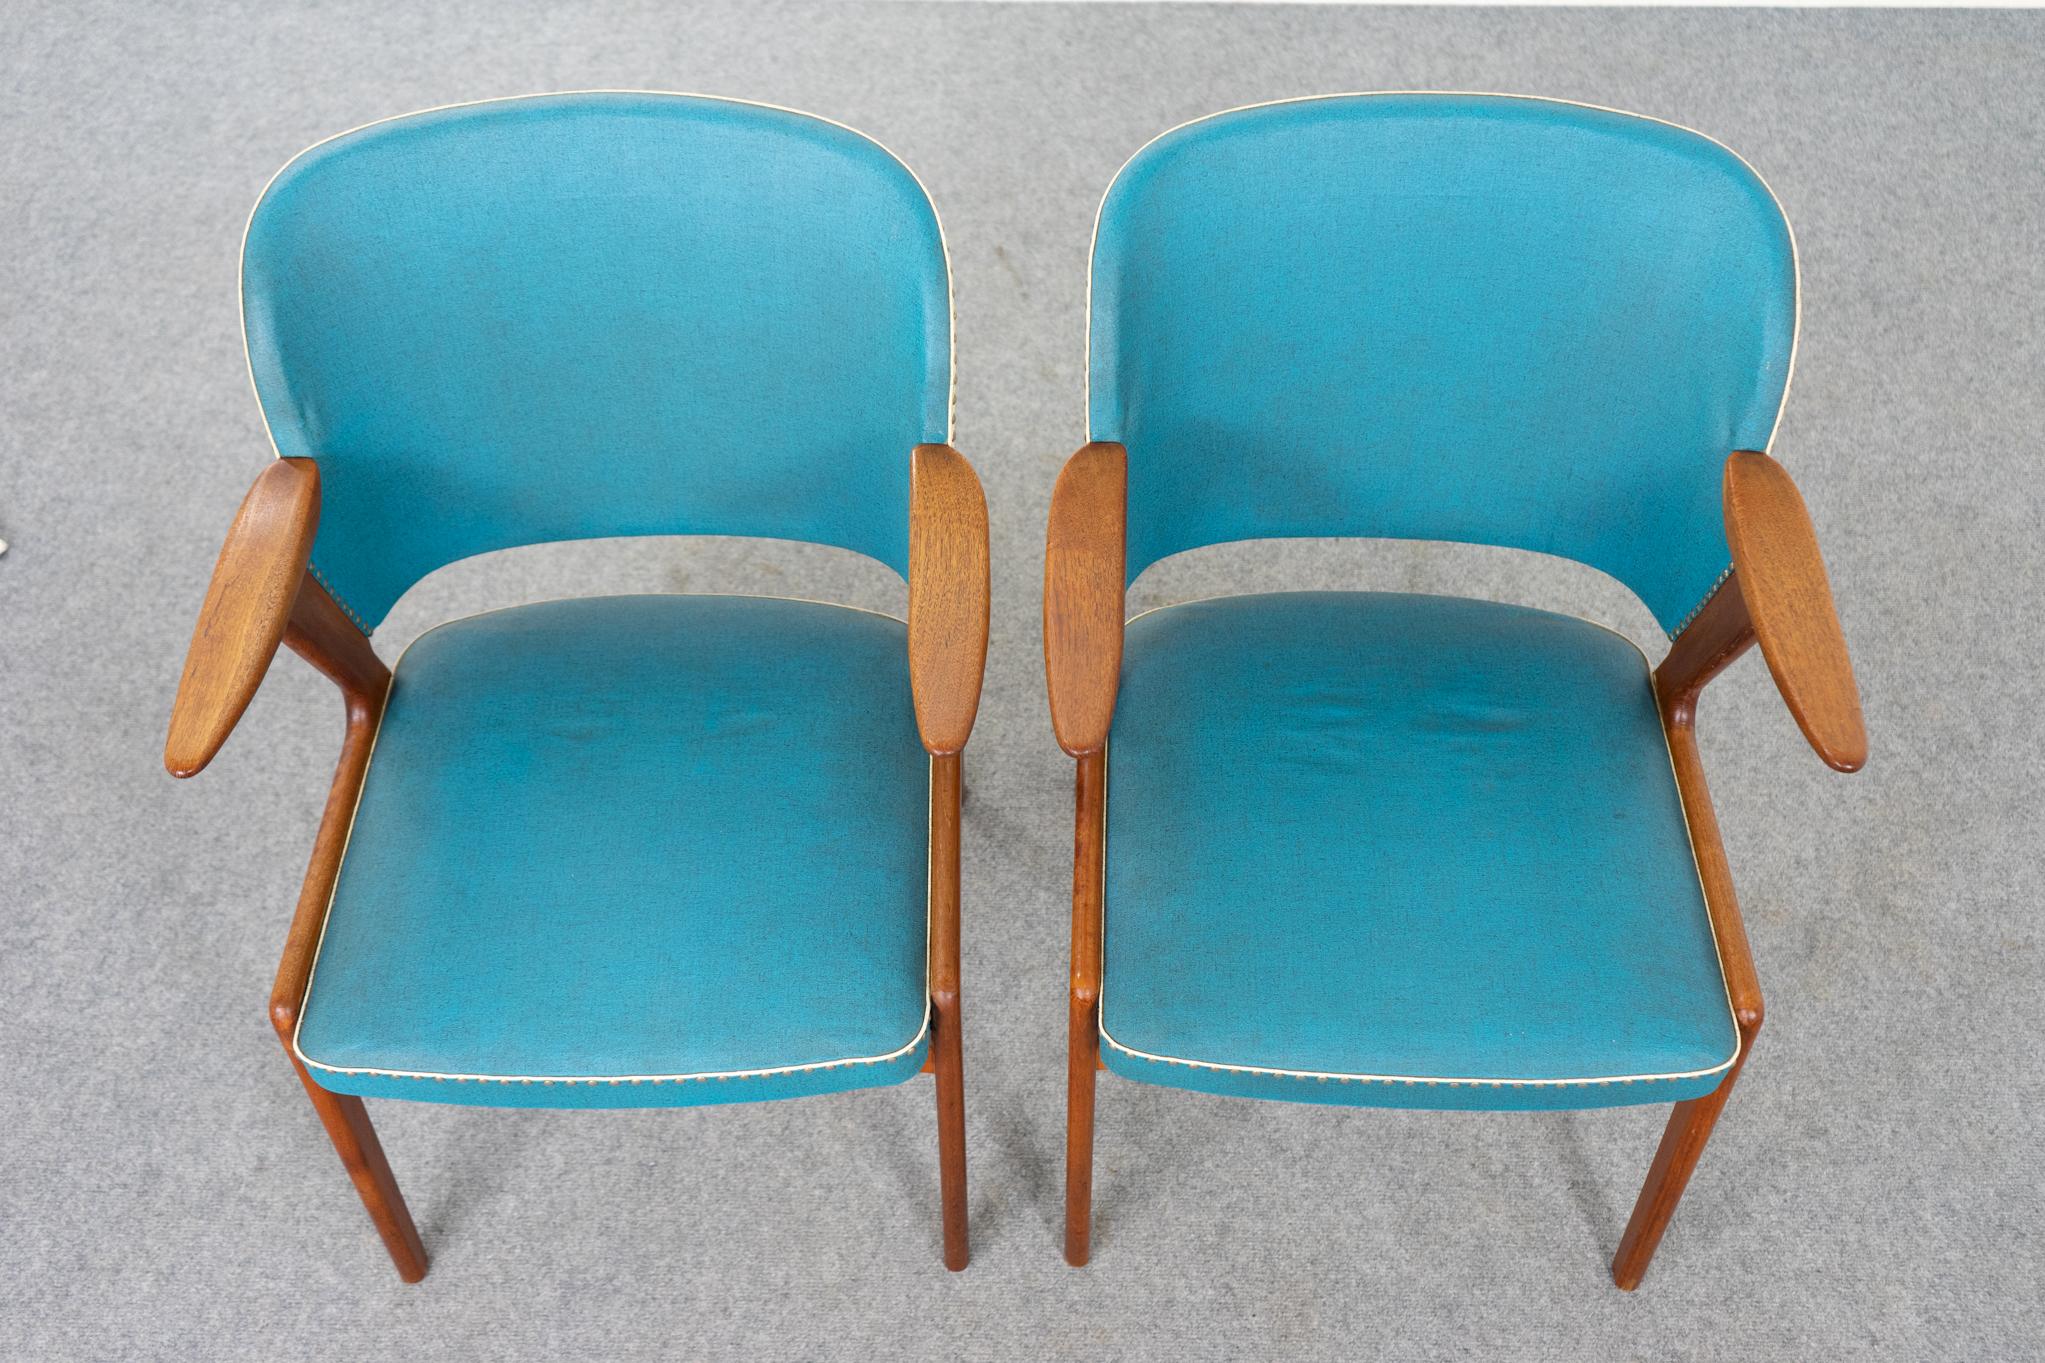 Paire de fauteuils danois en teck et vinyle, vers 1950. Le cadre Elegant avec les bras en flèche s'adapte parfaitement à toutes les pièces. Revêtement d'origine en vinyle contrasté sarcelle et crème. Le cadre magnifiquement sculpté offre un confort